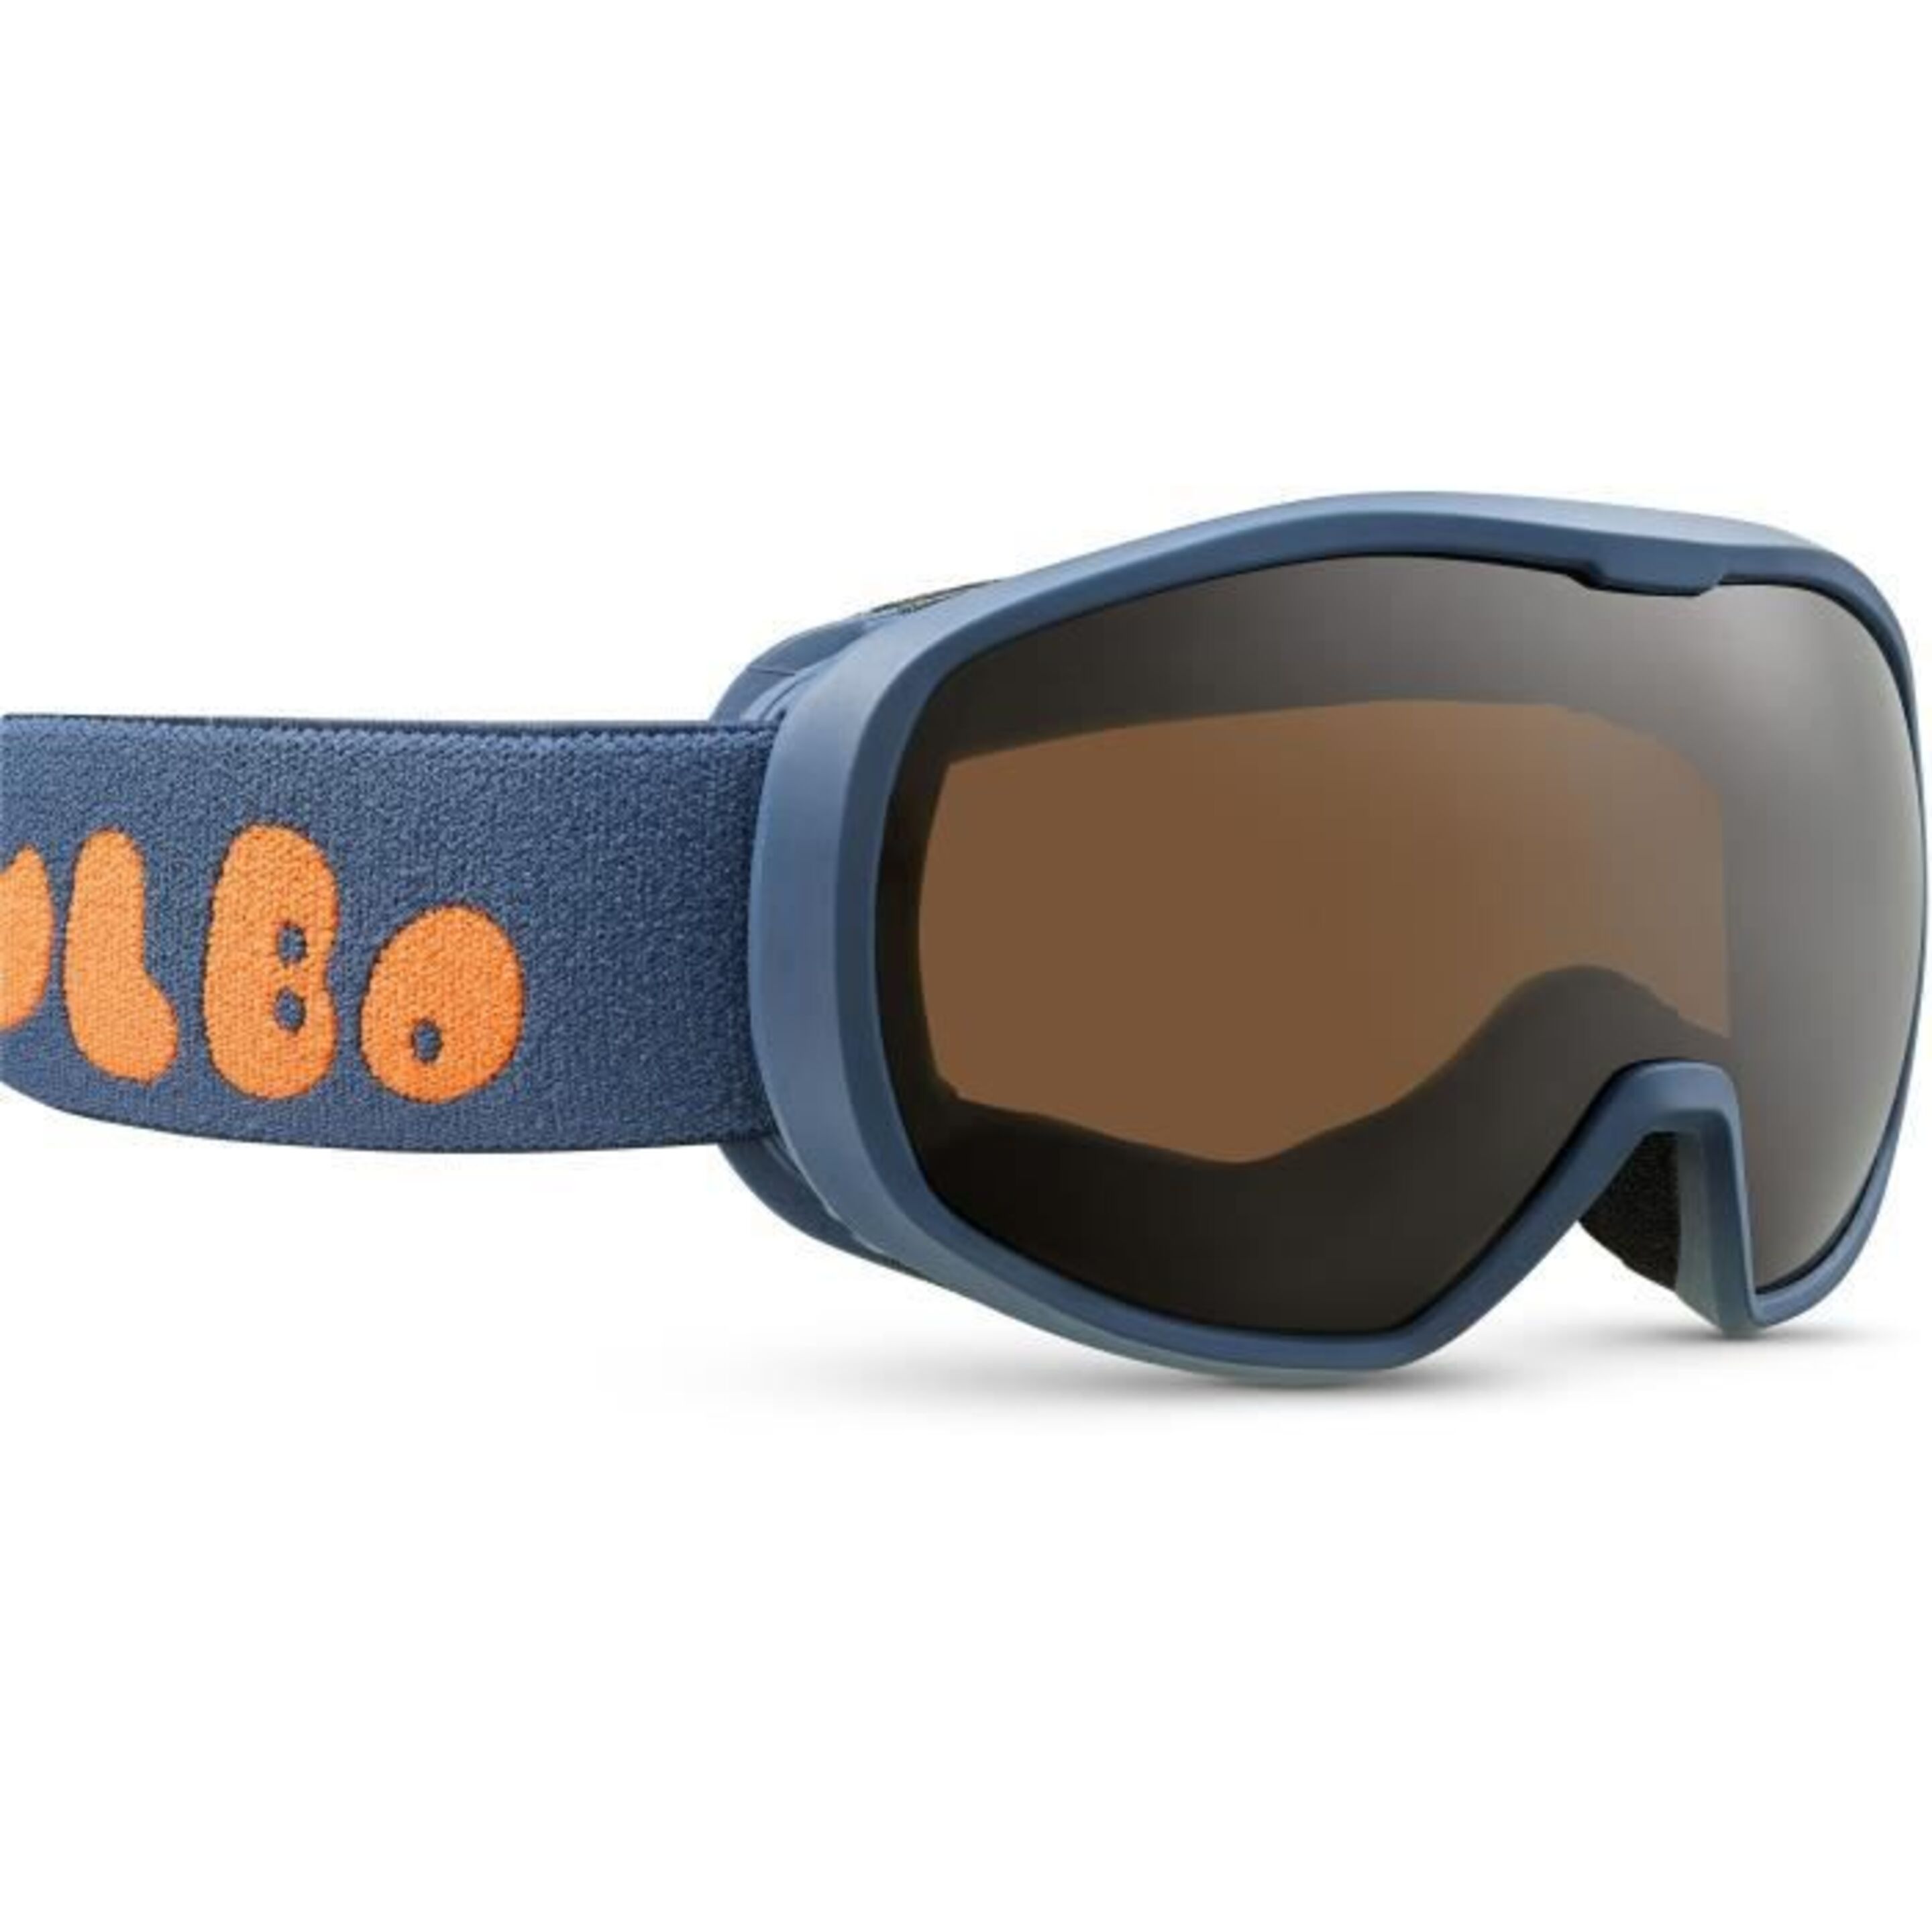 Gafas De Esquí Julbo Modelo Spot - Azul - Categoría 3  MKP